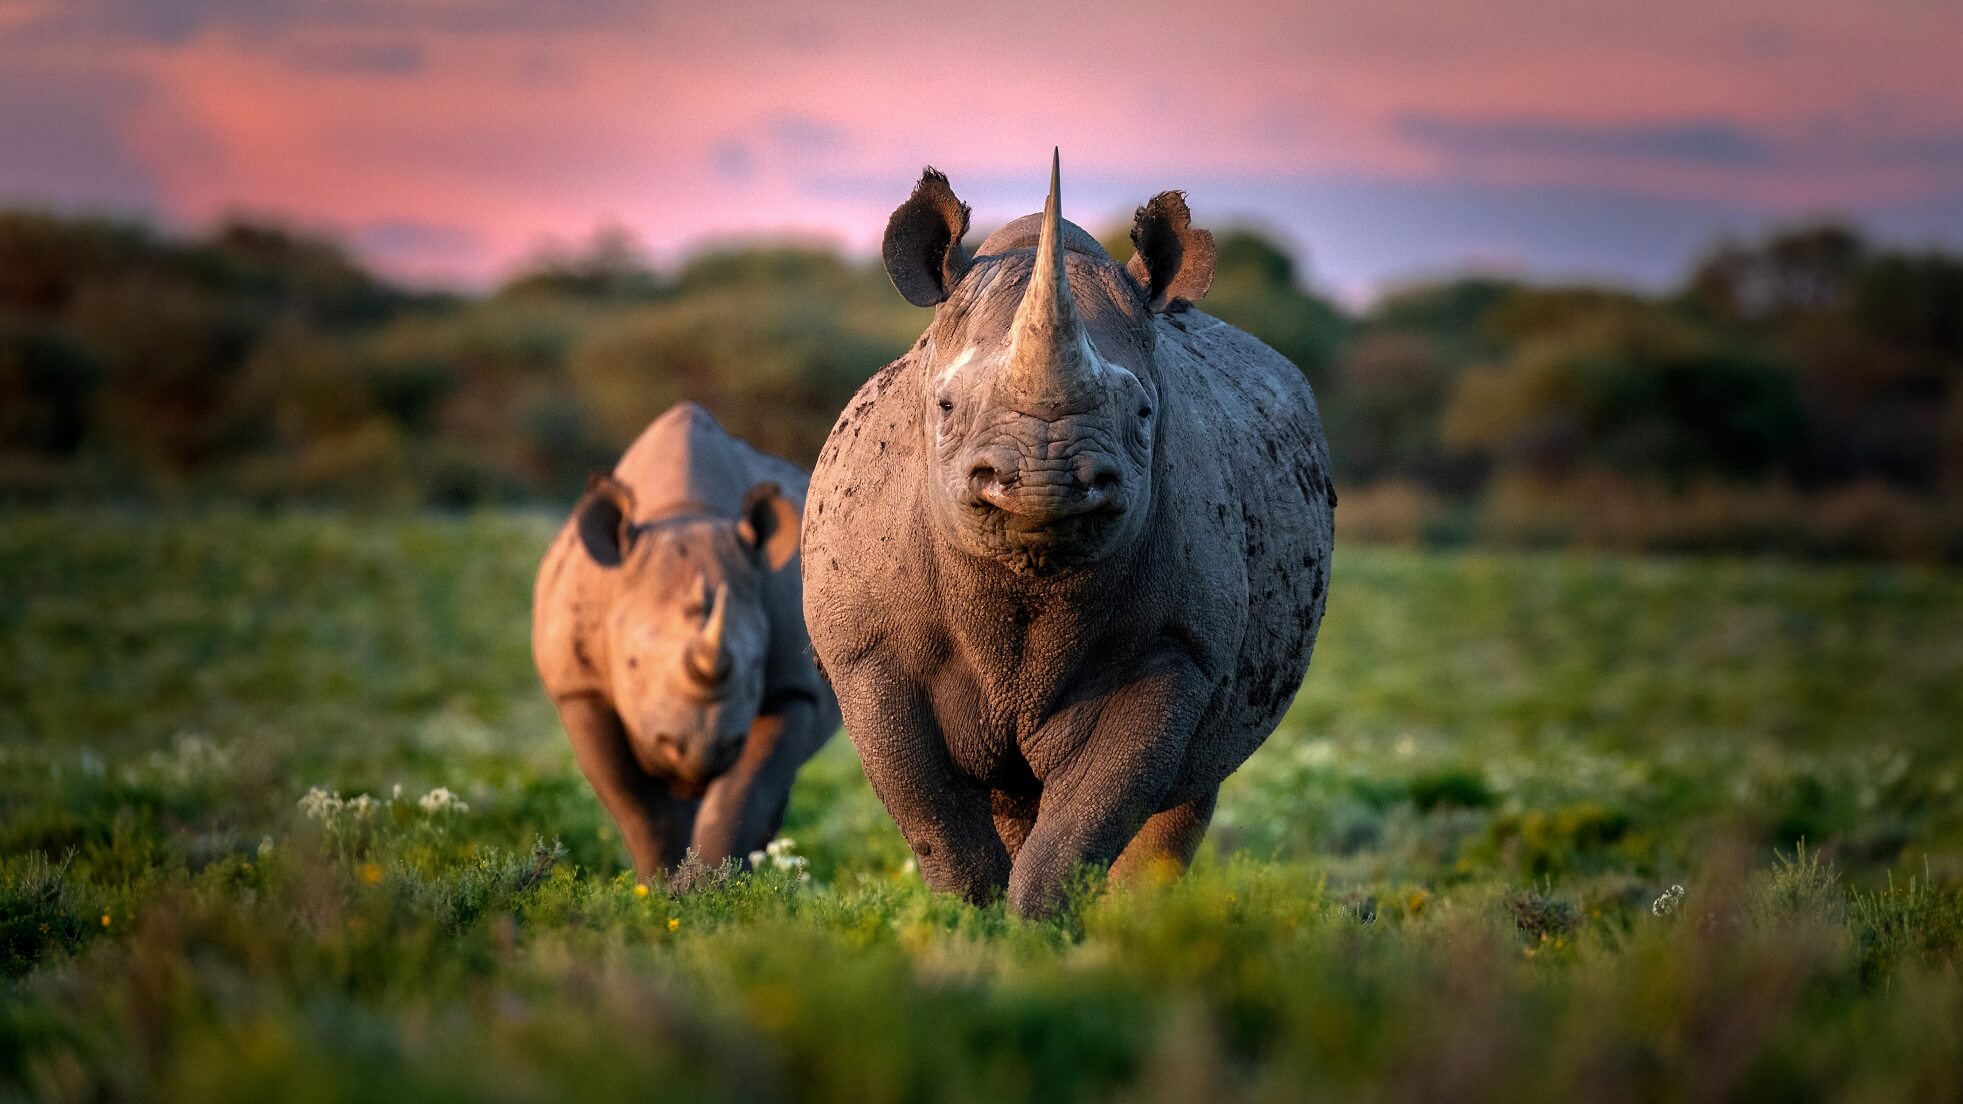 Volunteer and save black rhinos